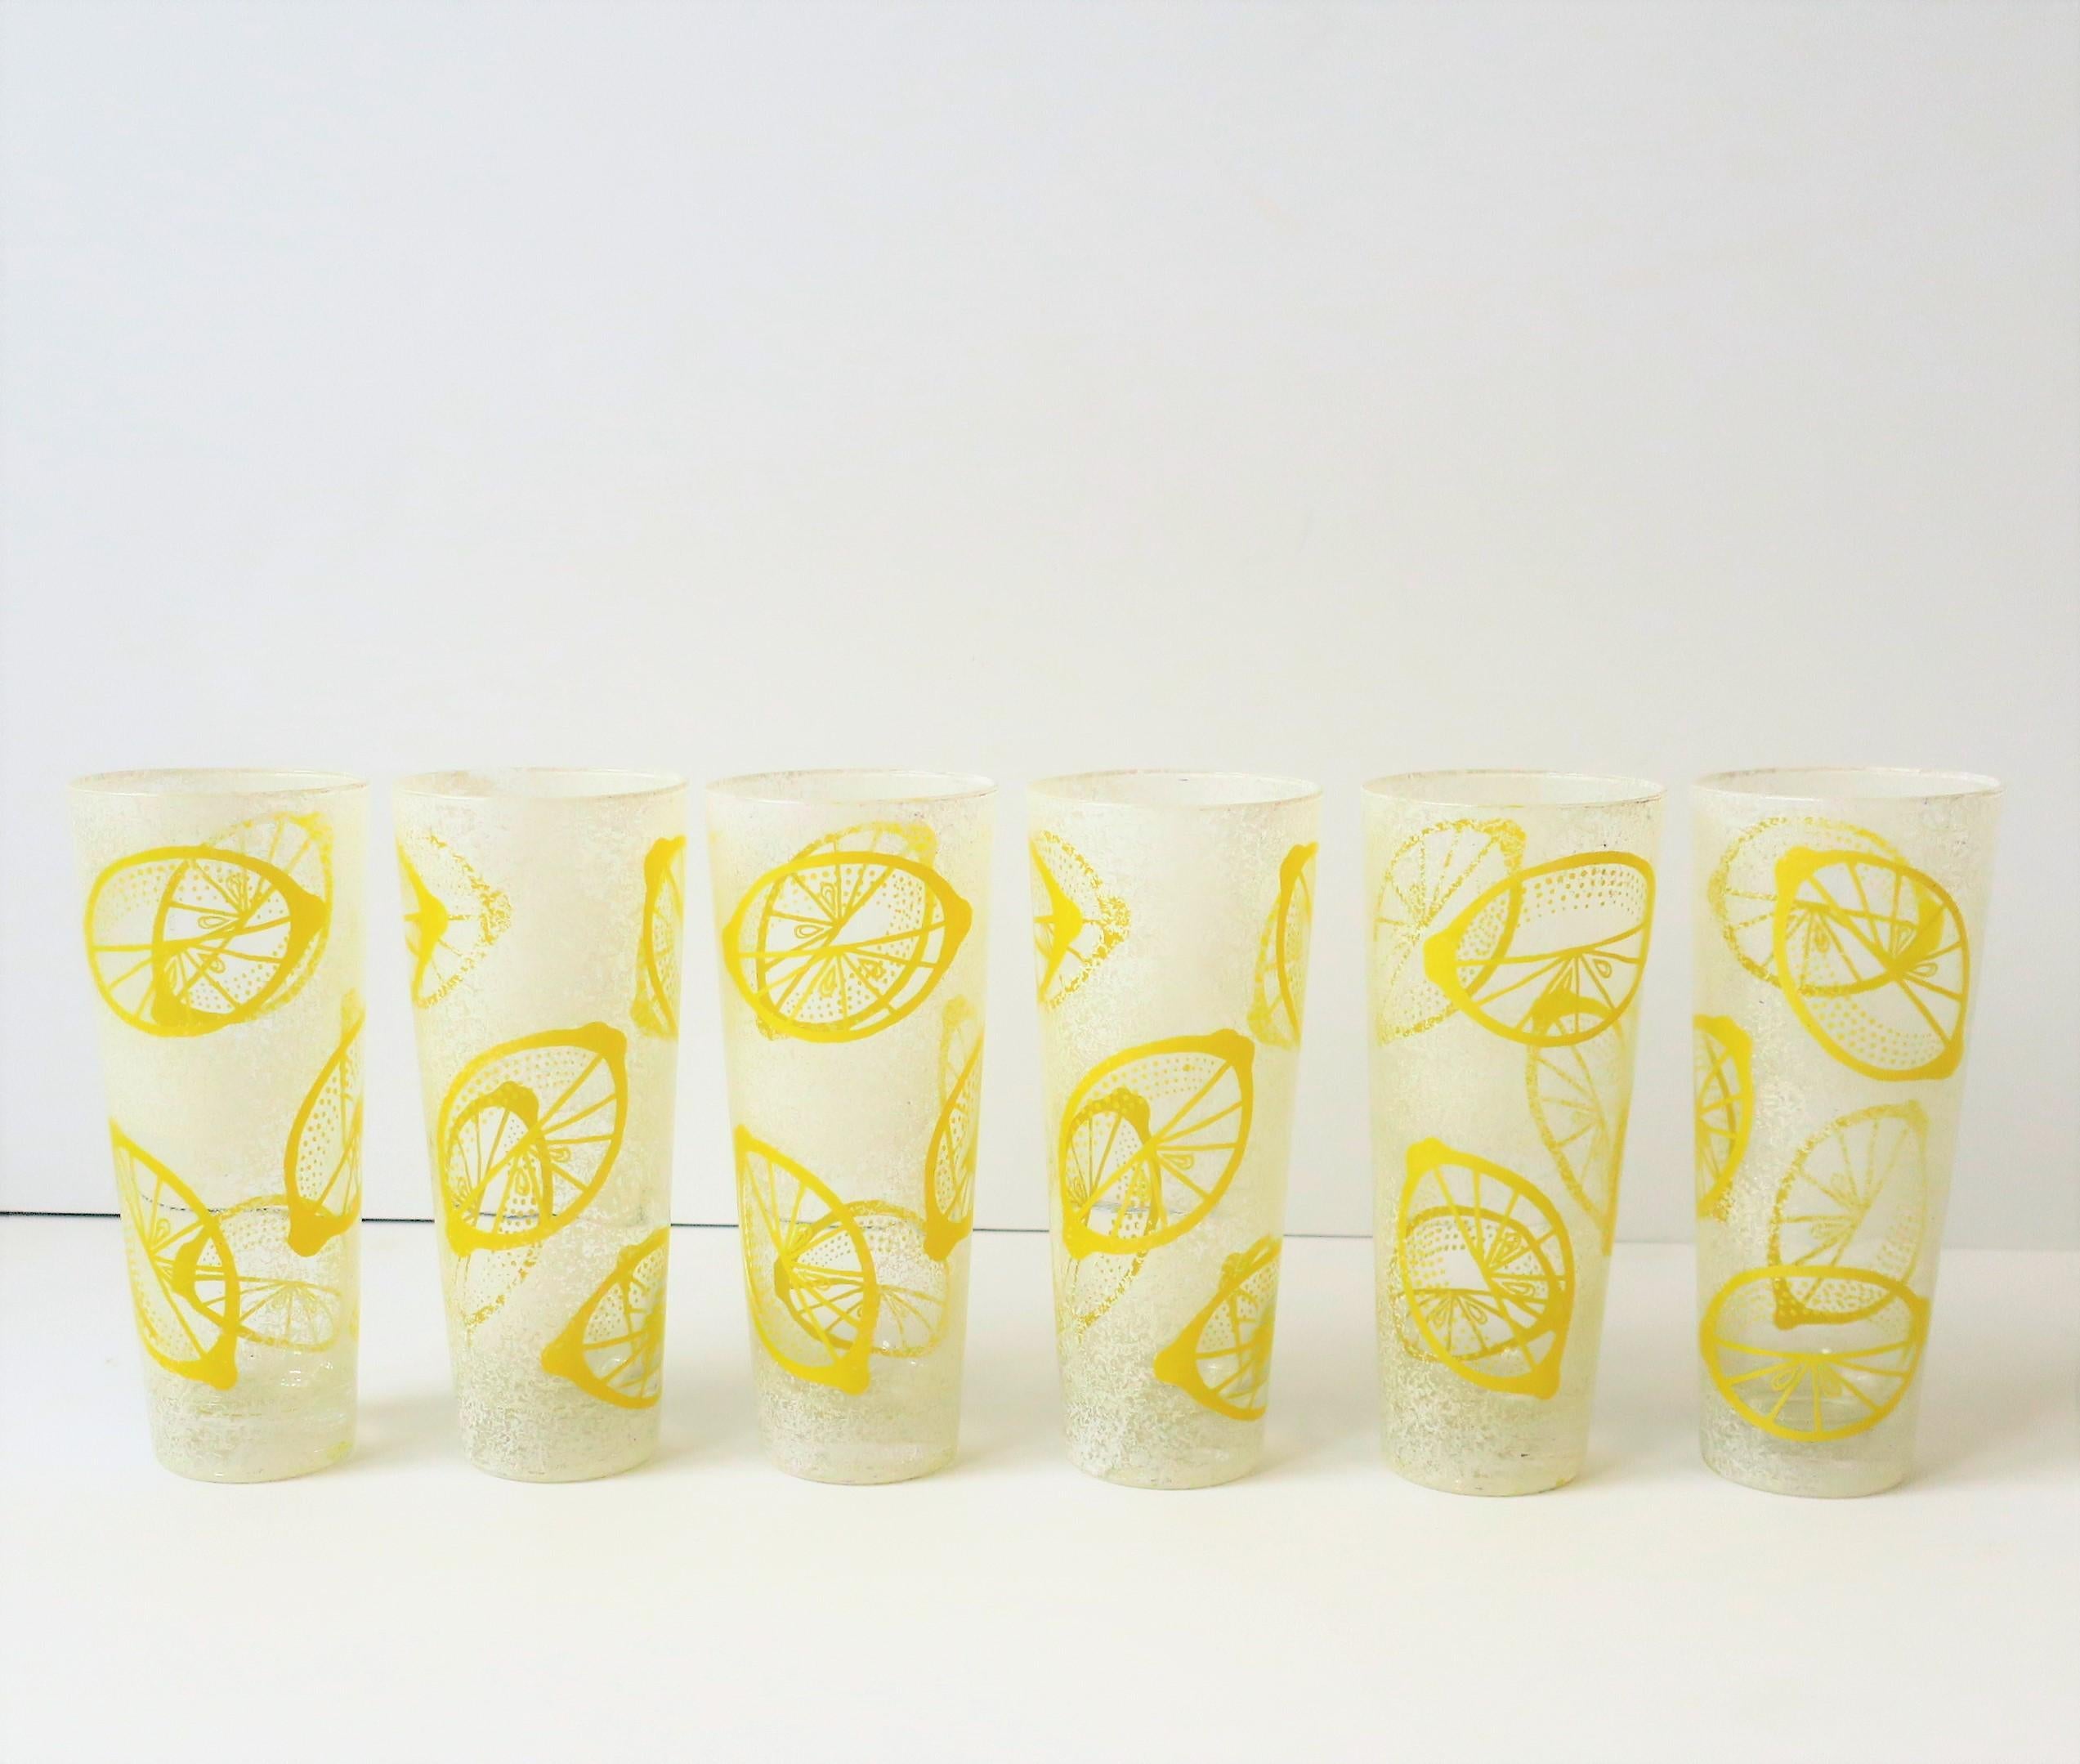 Un magnifique ensemble de 6 verres à cocktail highball vintage jaune et blanc avec un design en forme de coin de citron, vers le milieu du 20e siècle. Ce magnifique ensemble présente un design légèrement surélevé/texturé. Idéal pour les cocktails,